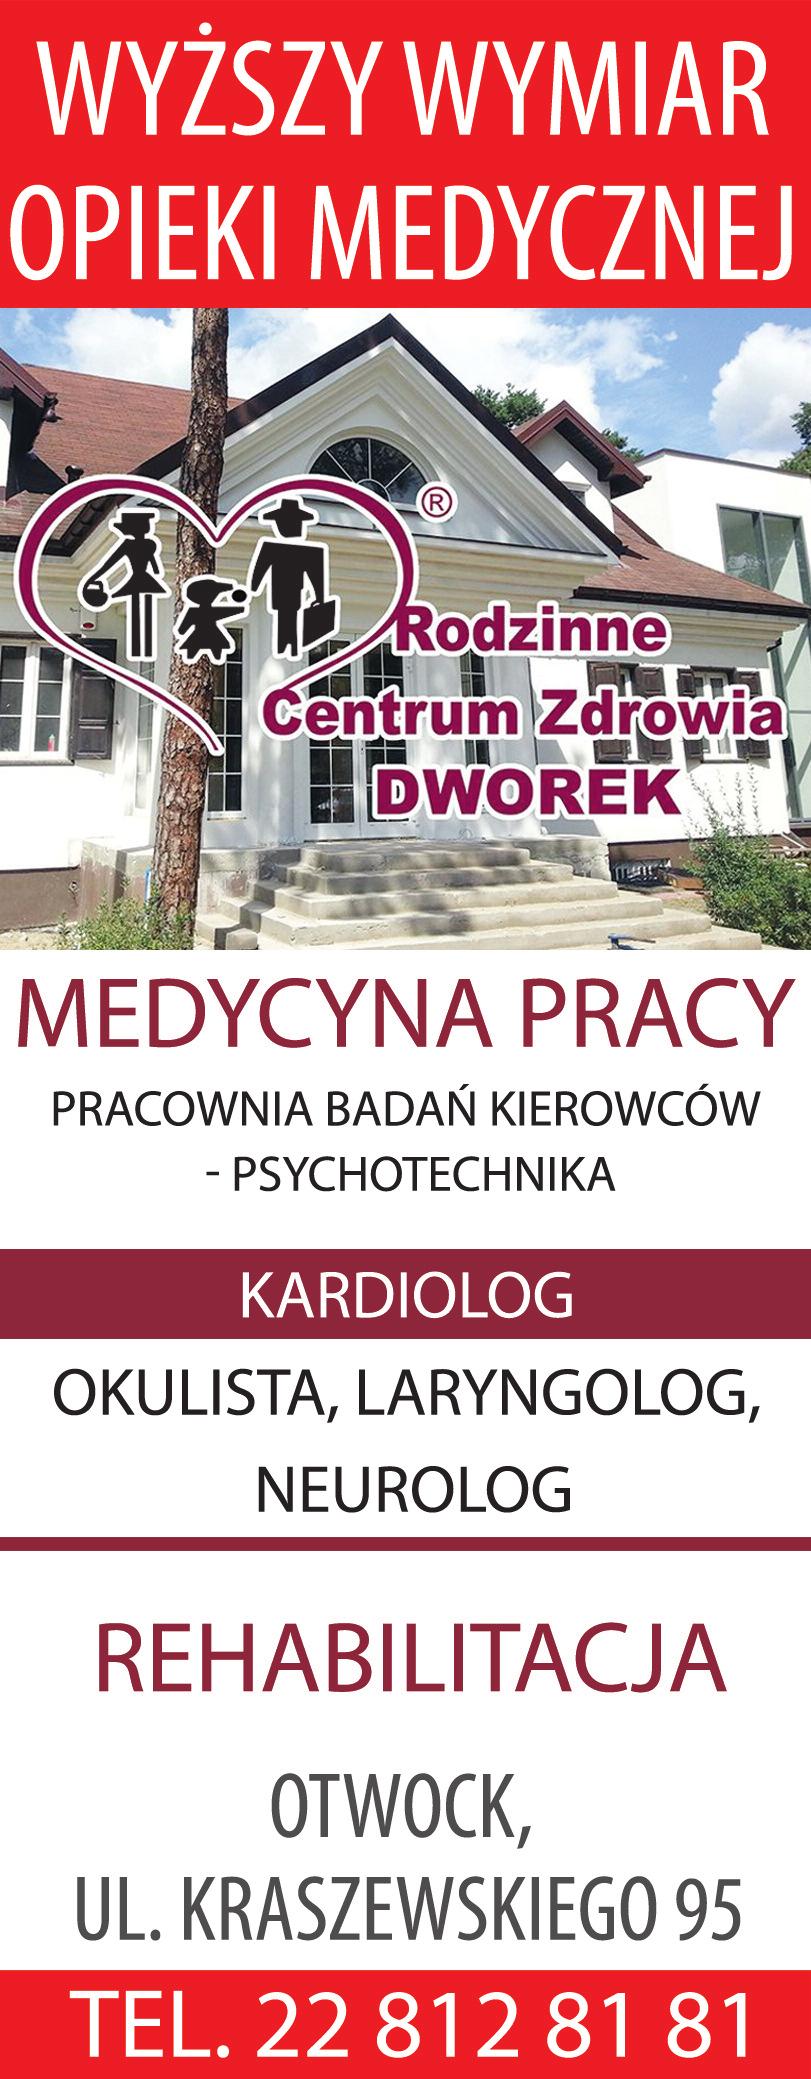 wyszyńskiego 103 22 779 28 21, 22 423 01 87 www.